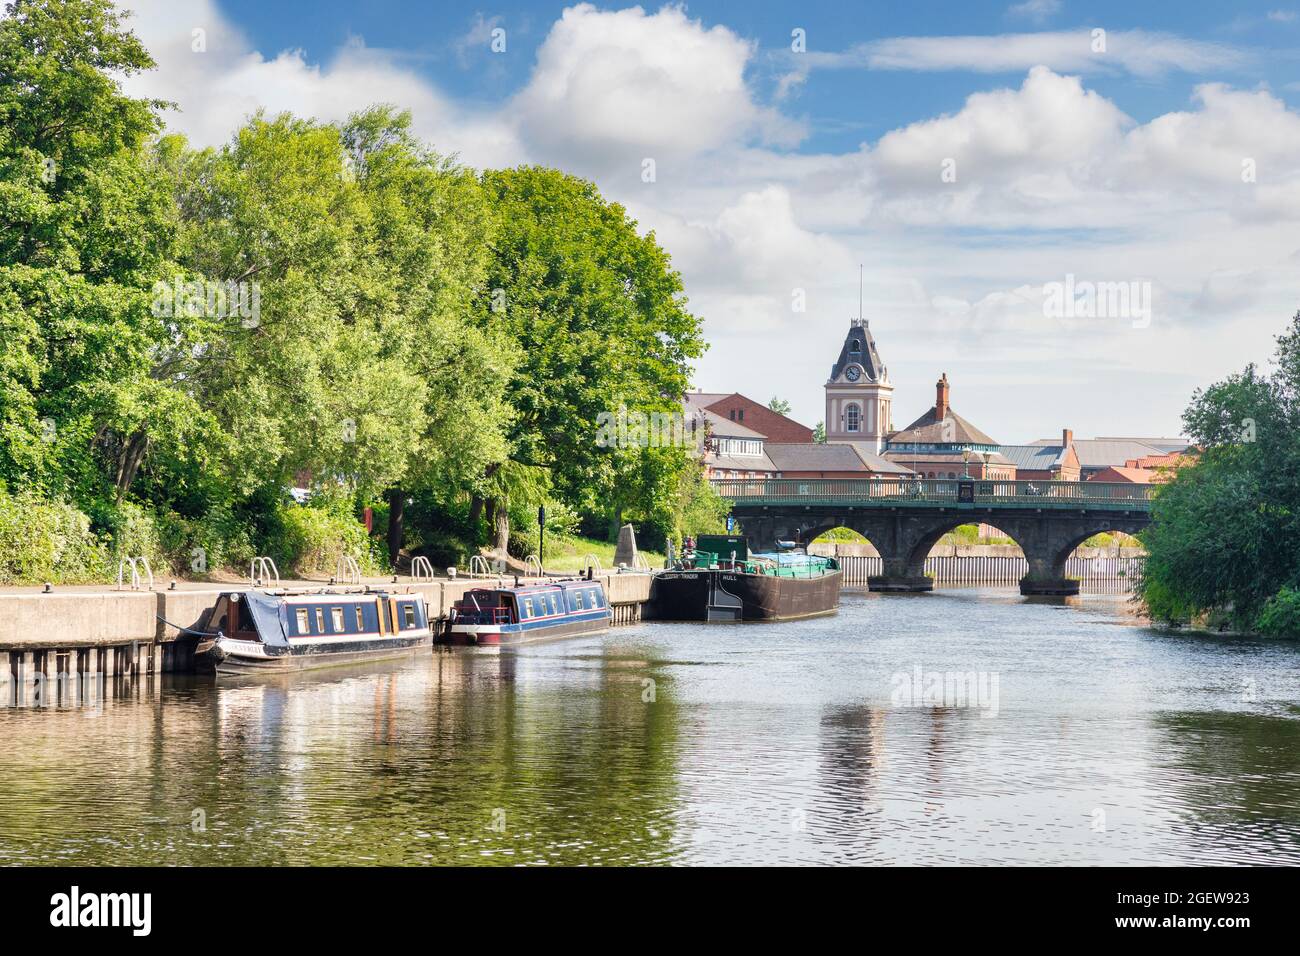 4 luglio 2019: Newark on Trent, Nottinghamshire, Regno Unito - il fiume Trent, con le barche a remi, e lo storico ponte Trent, costruito nel 1775. Foto Stock